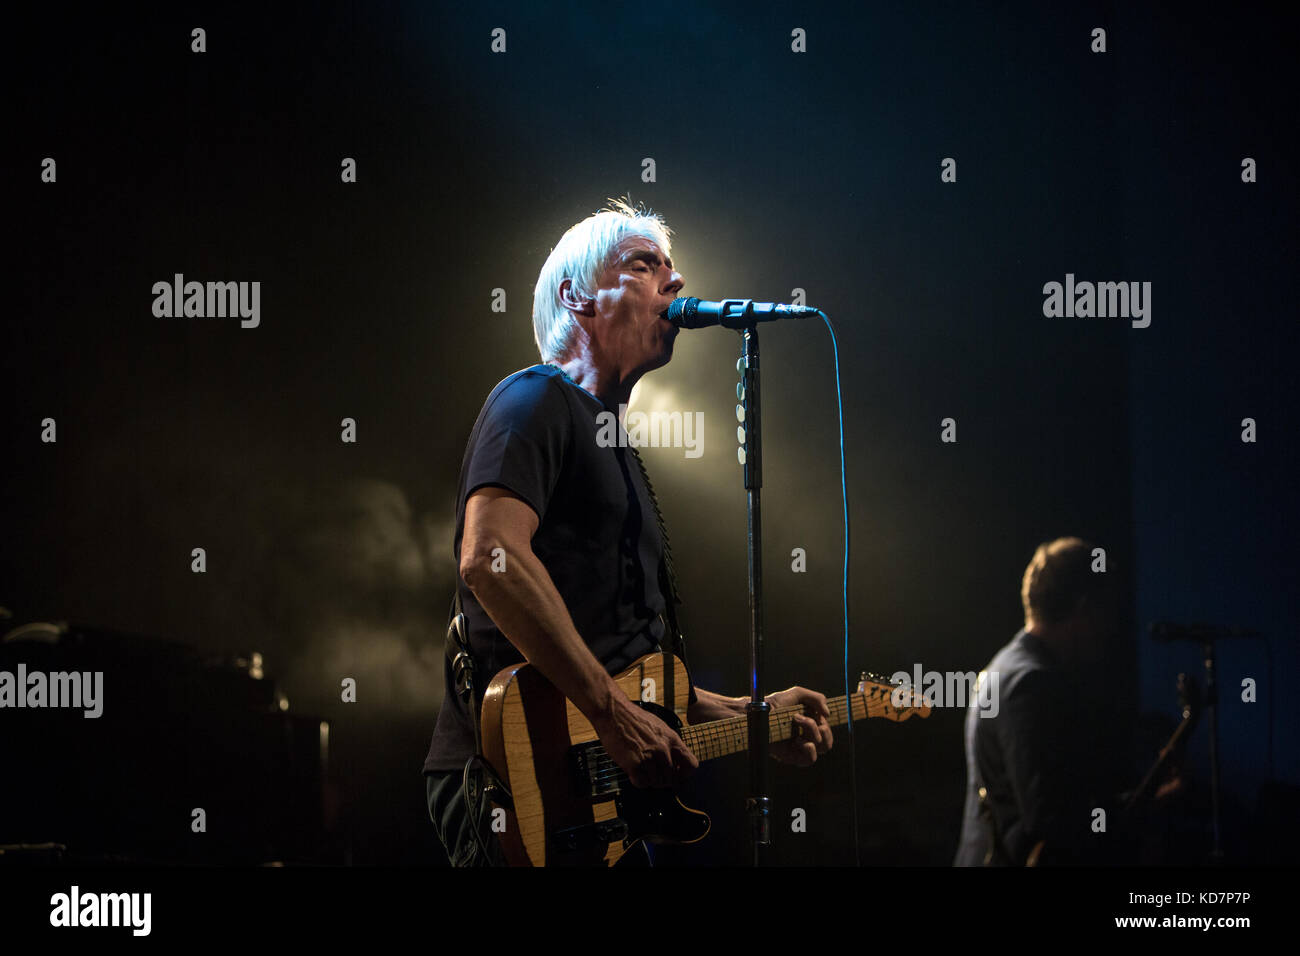 Toronto, Canada. 10 octobre 2017. Paul Weller se produit lors de son Aimable tour de révolution. Crédit: Bobby Singh/Alay Live News. Banque D'Images